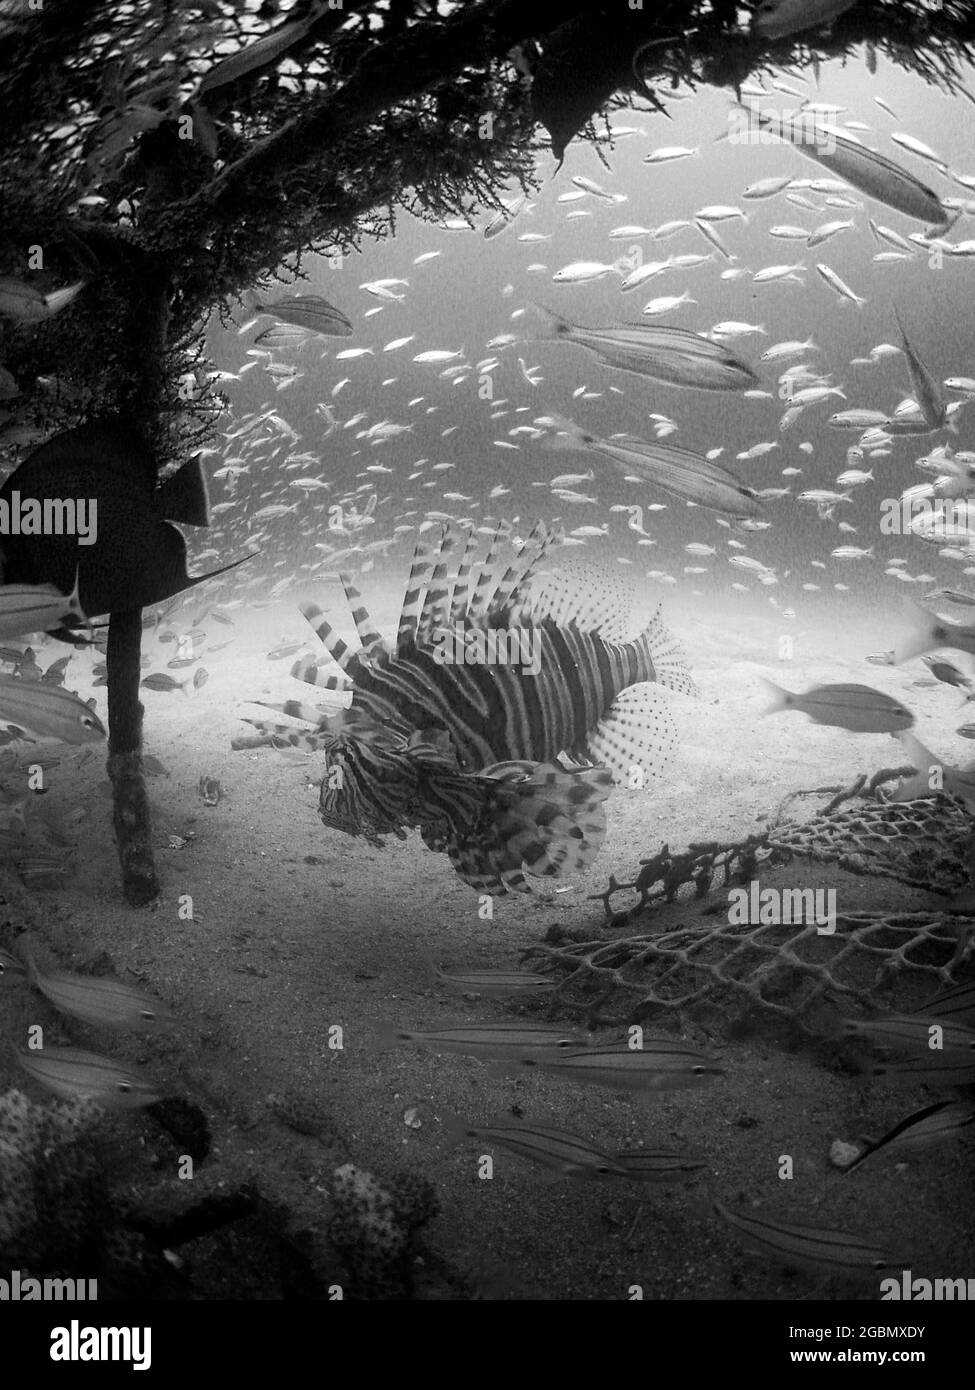 Immagine verticale in scala di grigi del pesce esotico catturato sotto l'acqua Foto Stock